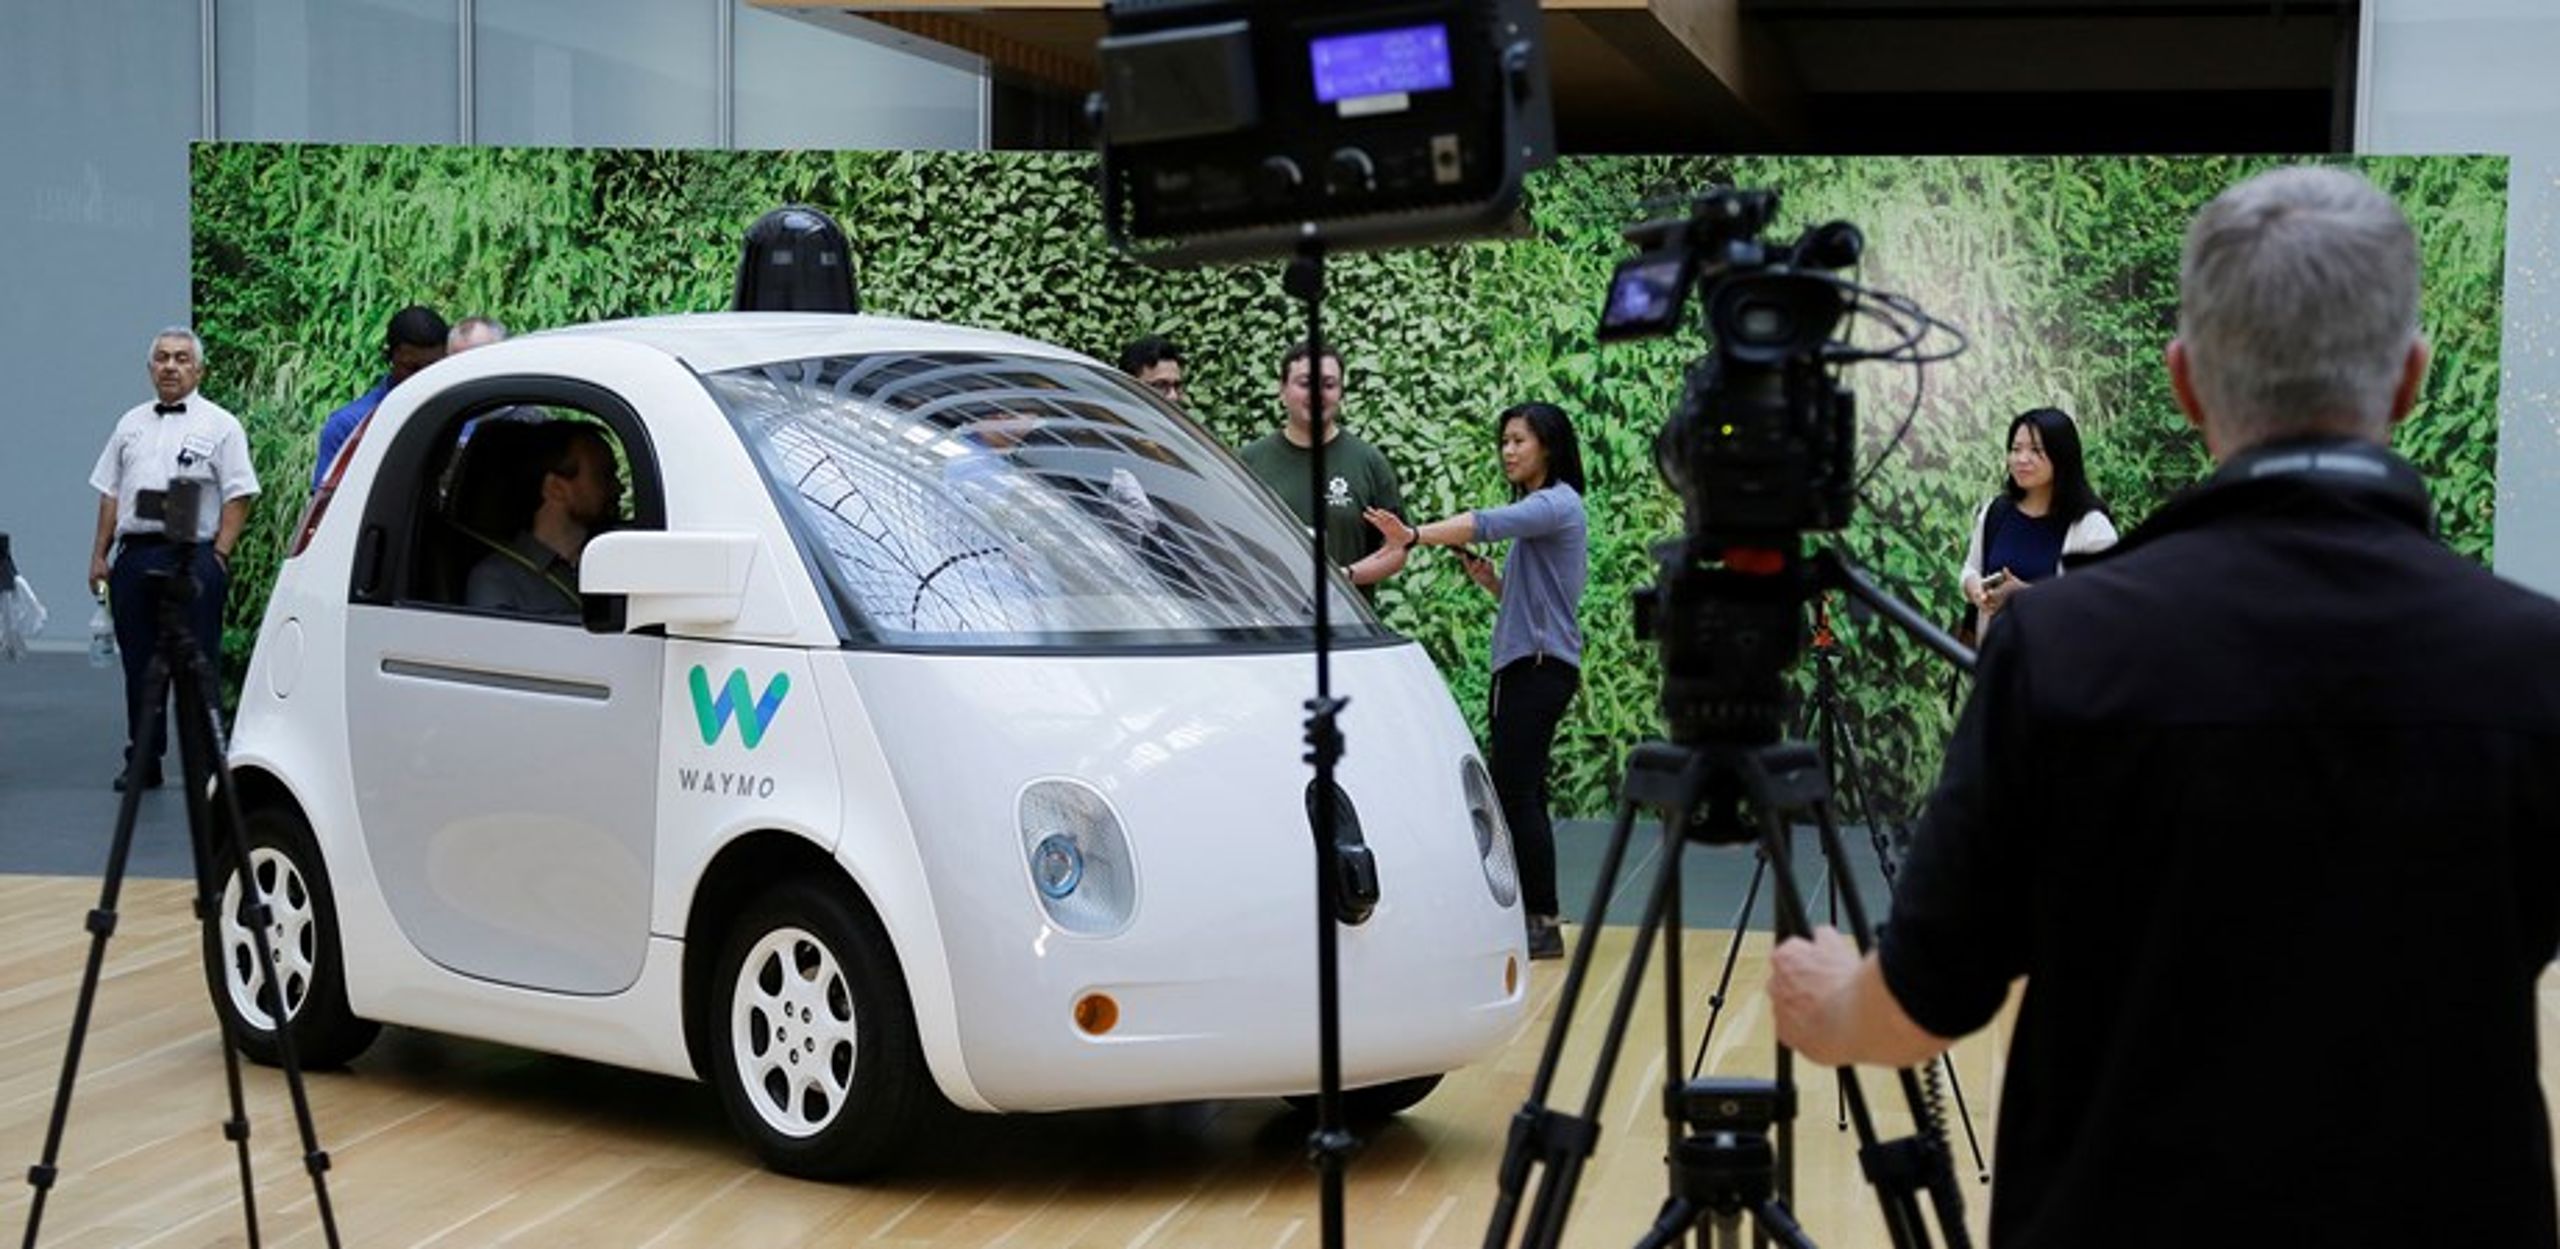 Googles selvkørende bil, Waymo,
har hverken rat
eller pedaler - og
både design og
navn bærer mindelser
om Disneys
Wall-E-film fra
2008.